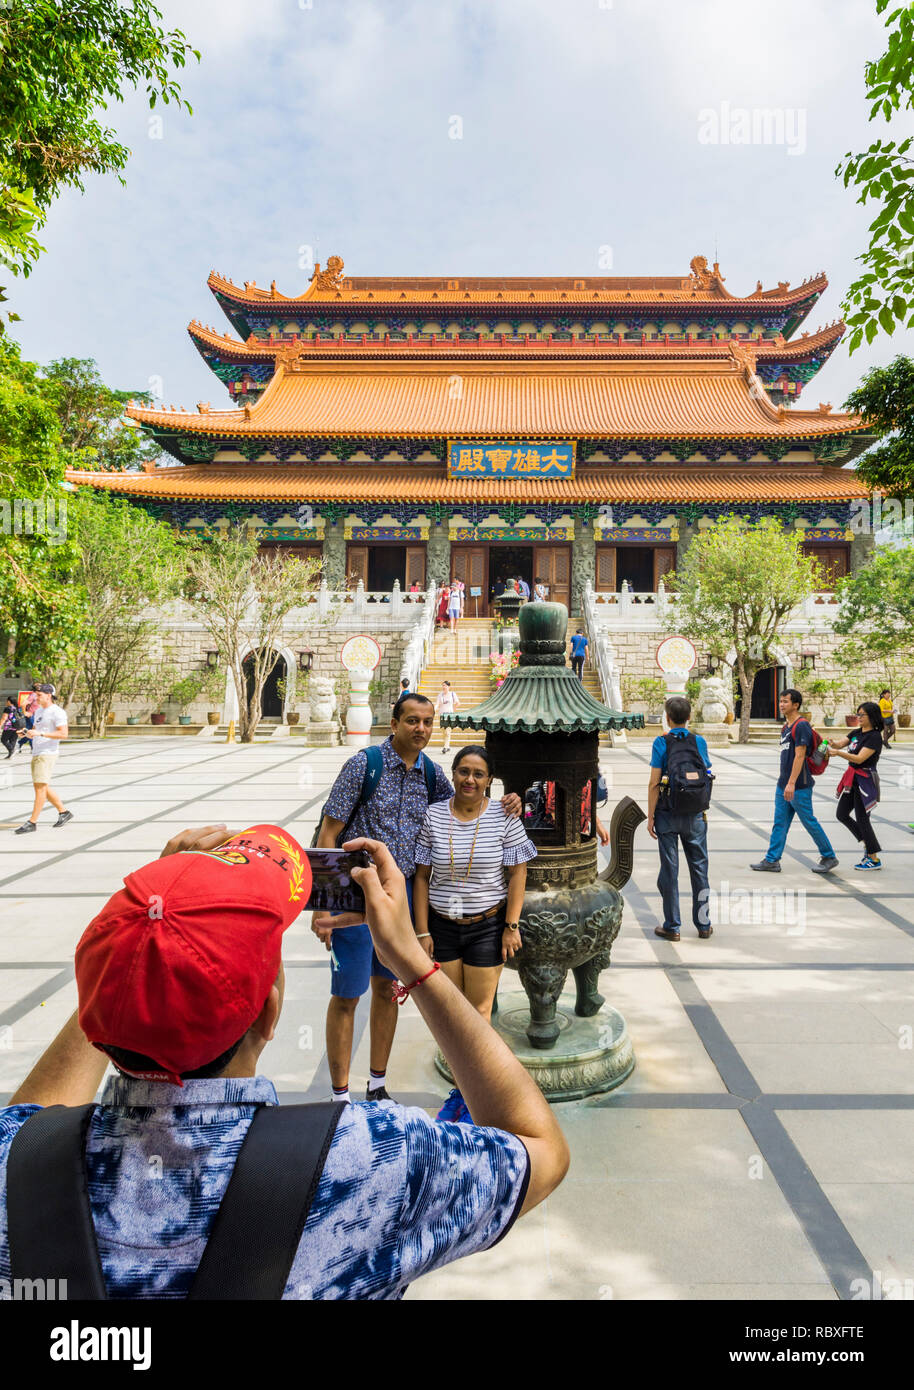 Un touriste prend une photo de personnes au monastère Po Lin, Lantau Island, Hong Kong Banque D'Images